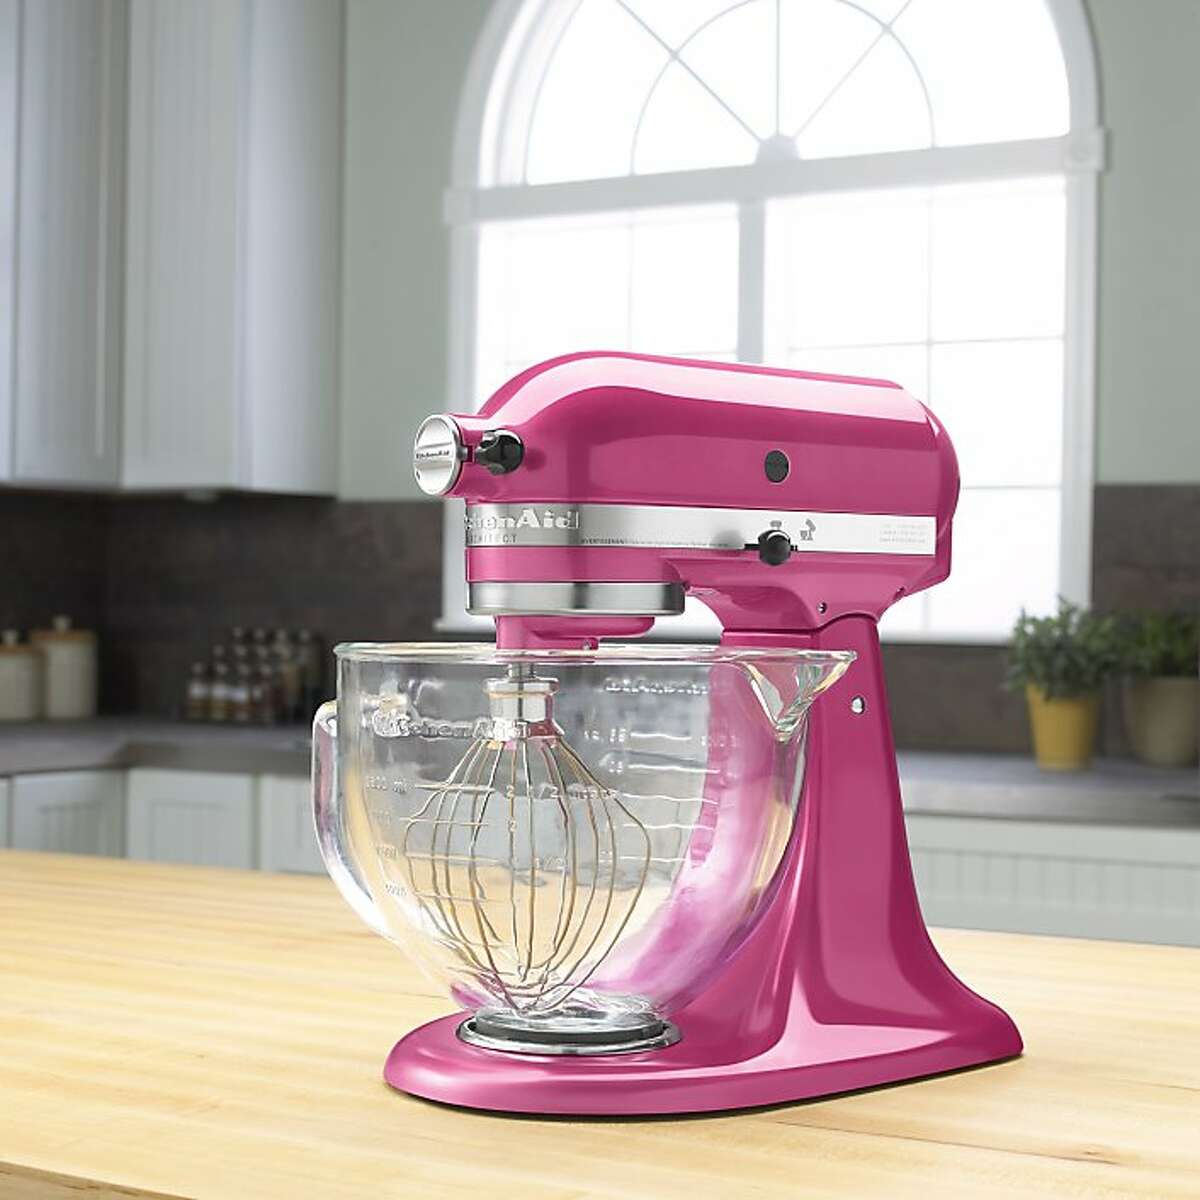 KitchenAid Artisan mixer in pink